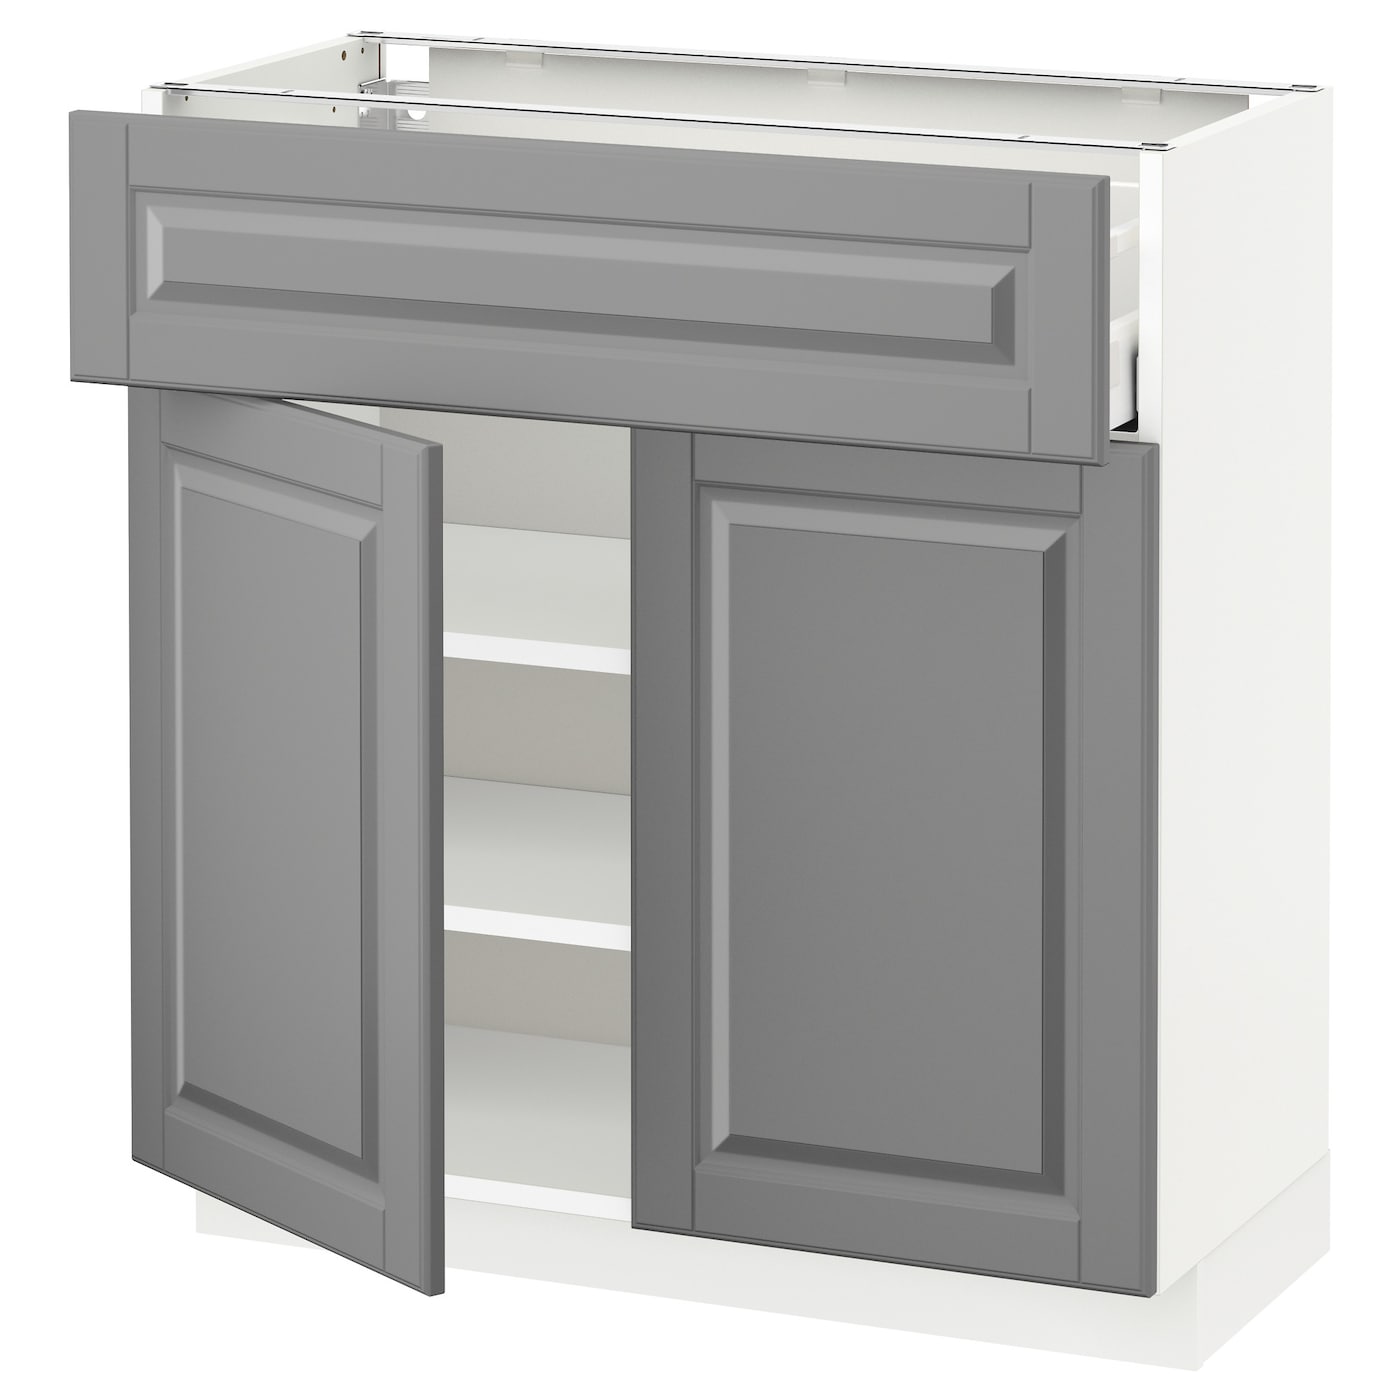 Напольный кухонный шкаф  - IKEA METOD MAXIMERA, 80x37x80см, белый/серый, МЕТОД МАКСИМЕРА ИКЕА